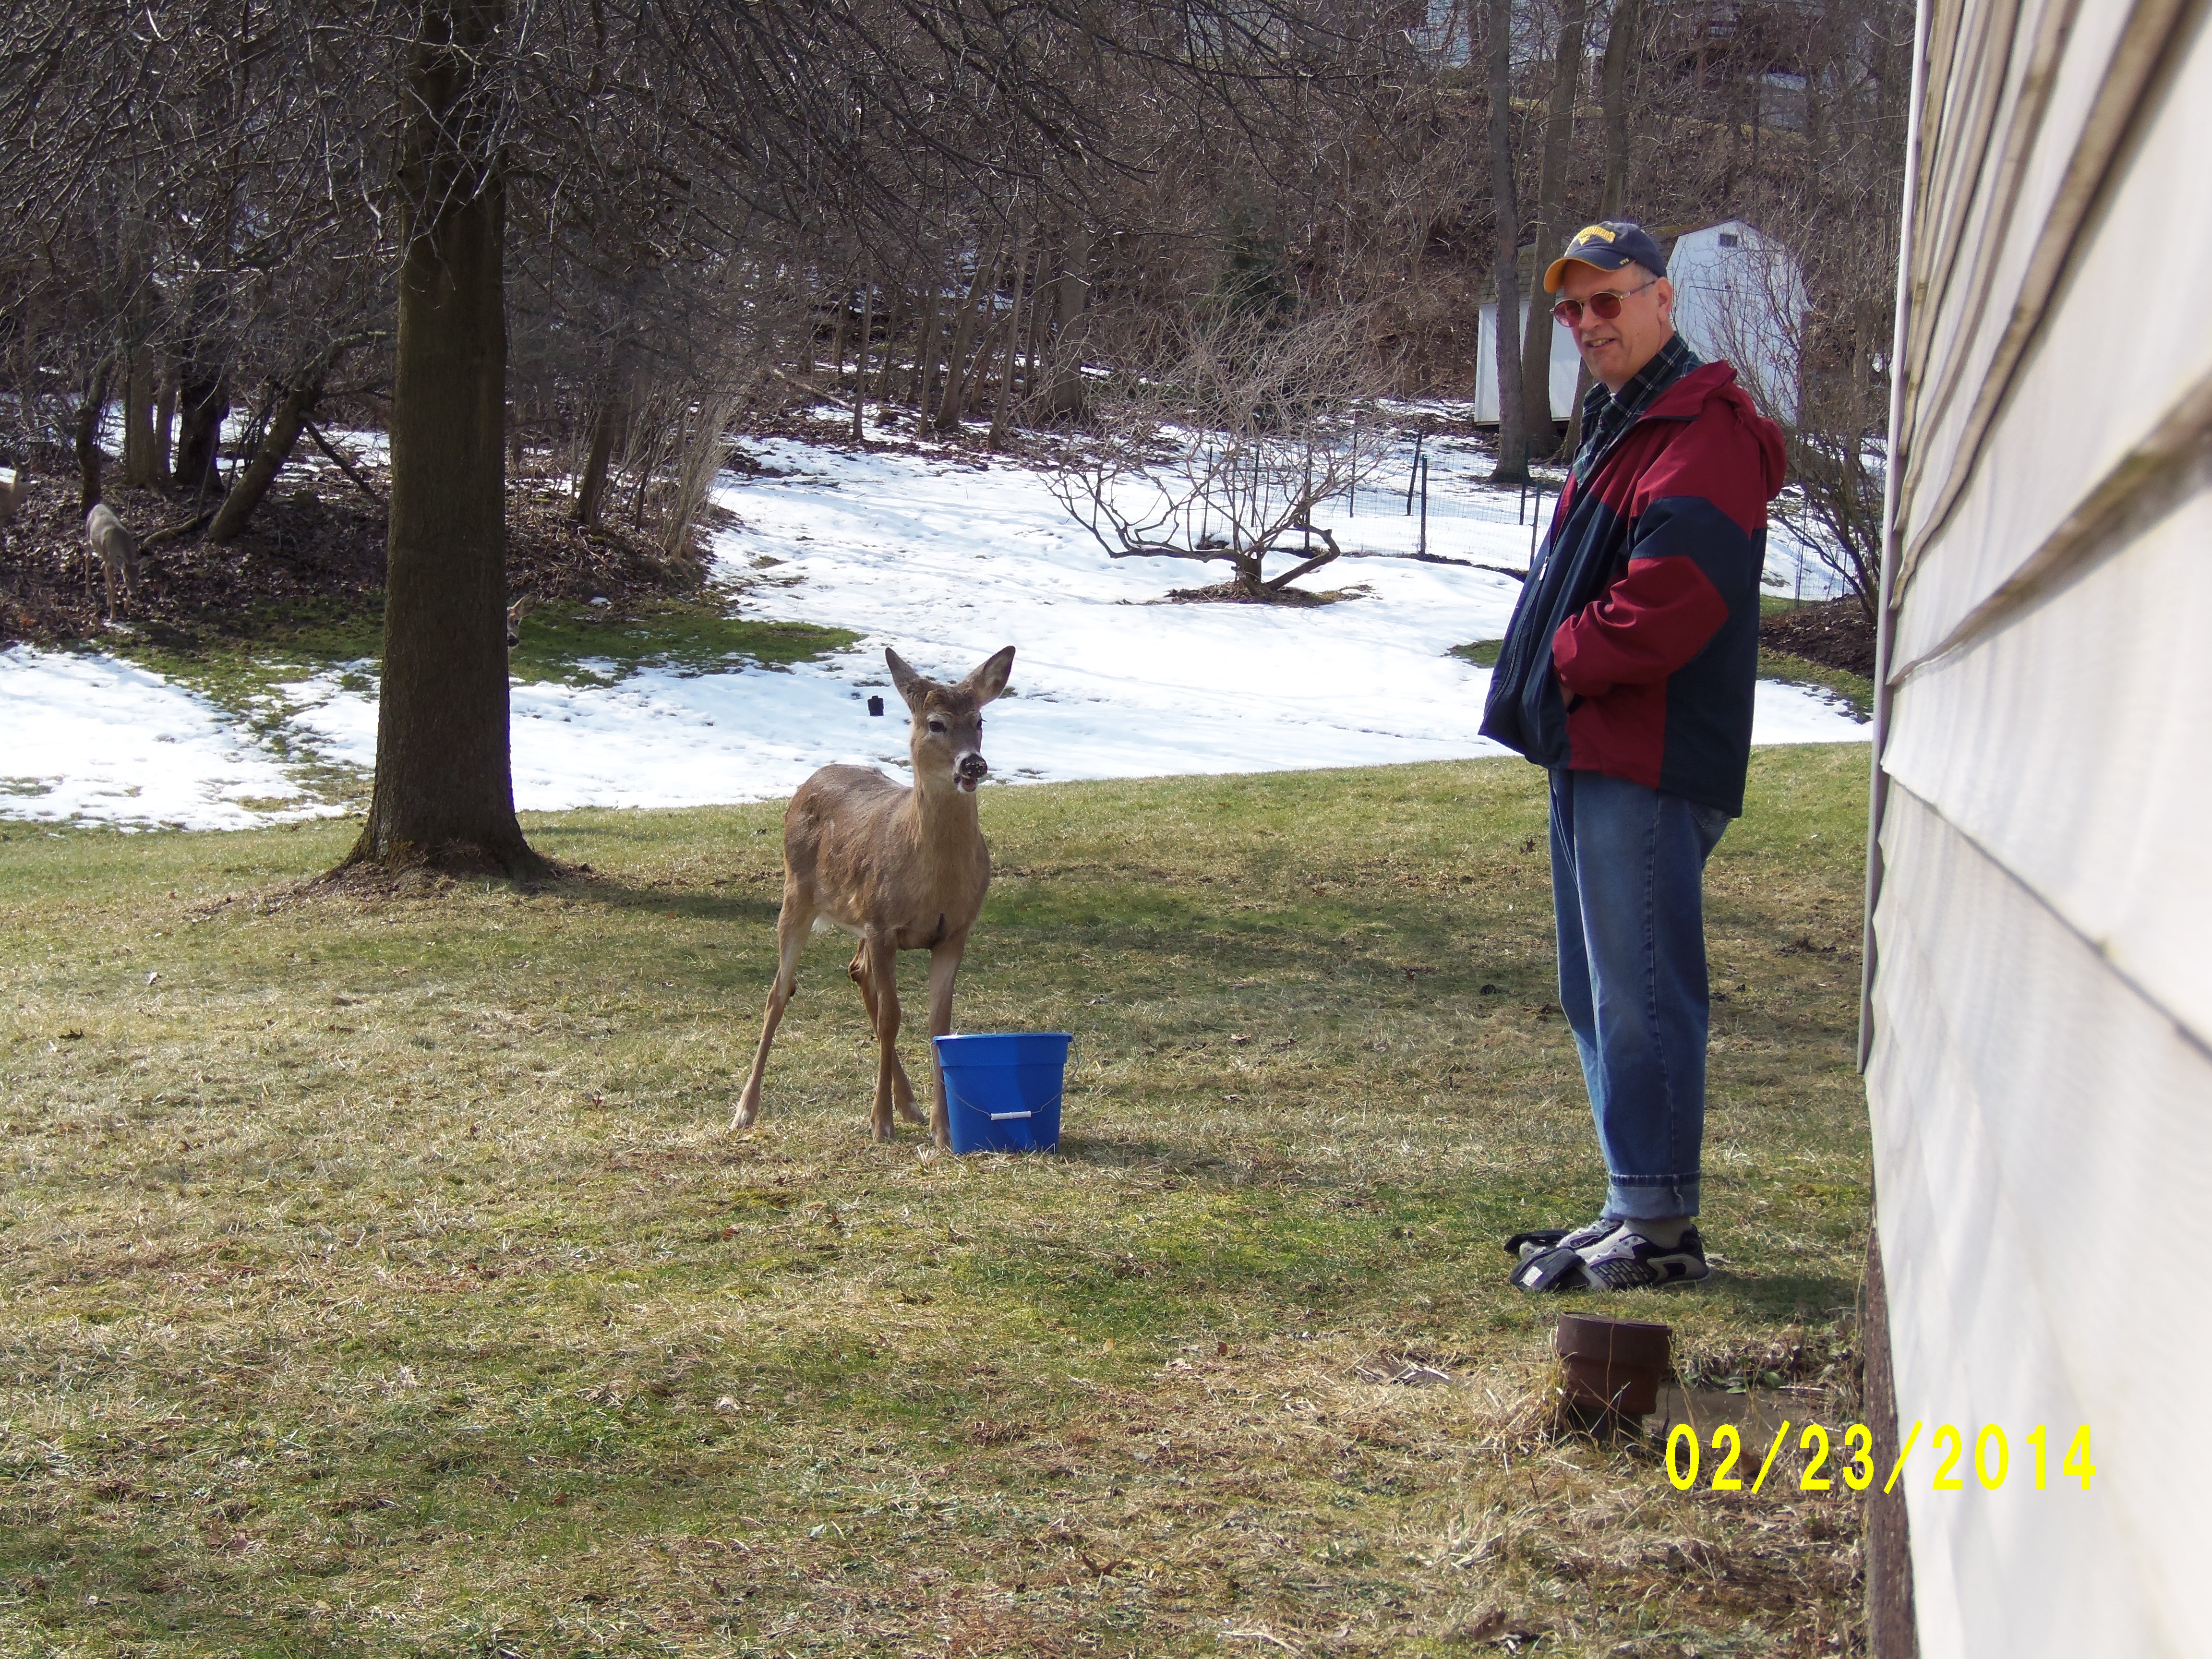 Pat and his deer :)